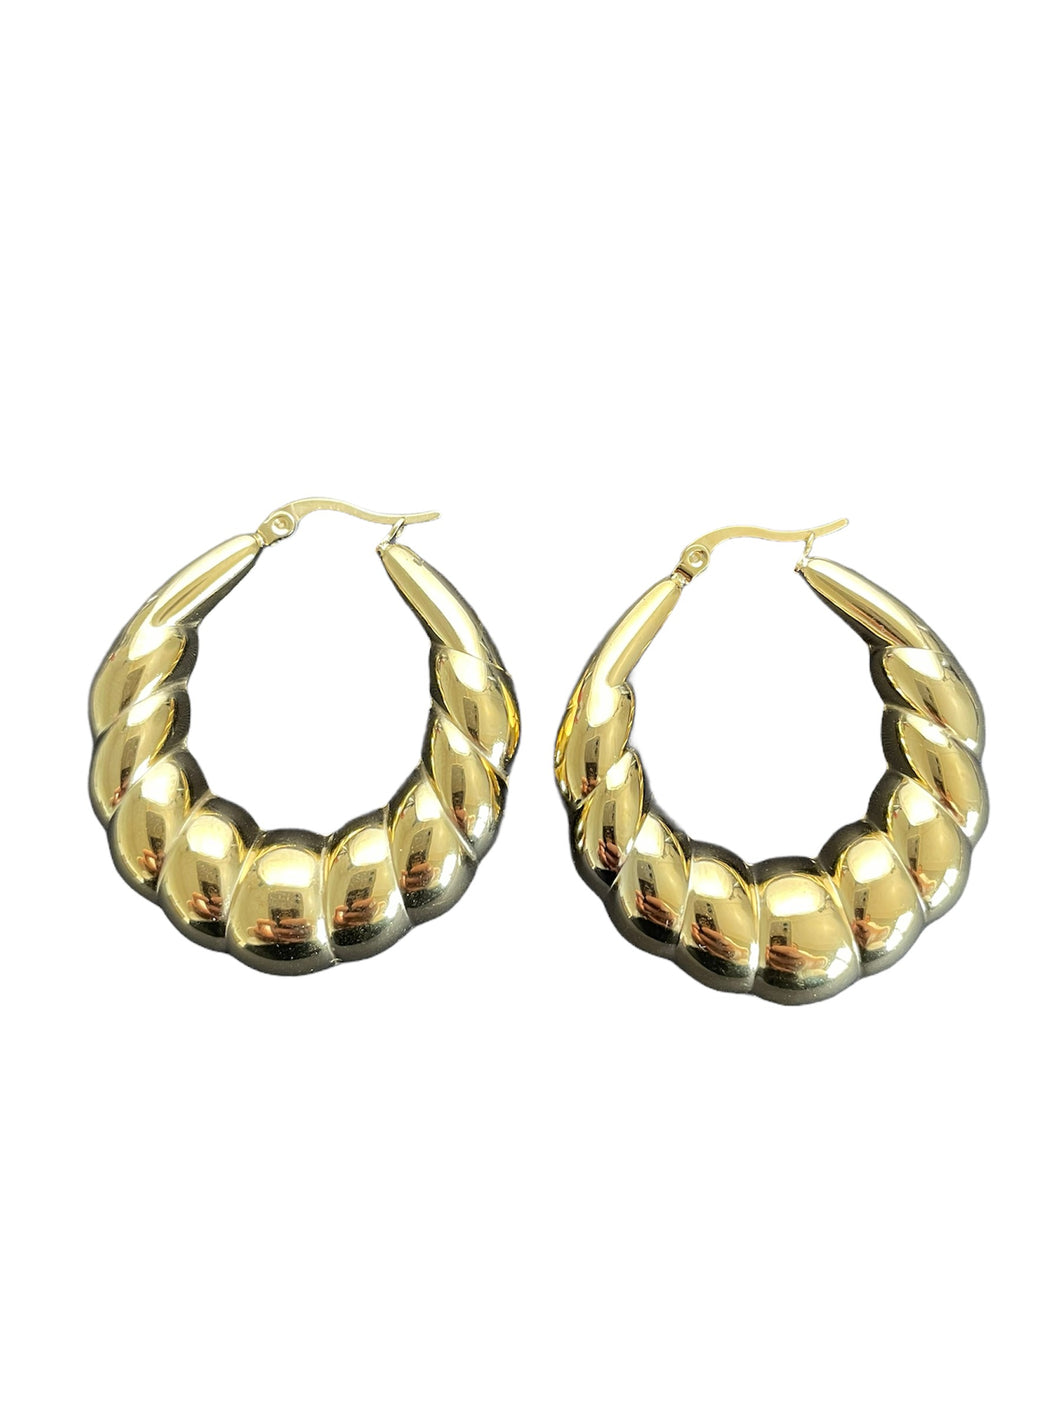 Gouden oorbellen Pam zijn mooi vormgegeven. Oorbellen Pam zijn verkrijgbaar in goud- en zilverkleurig stainless steel en hebben een diameter van ca. 4cm.